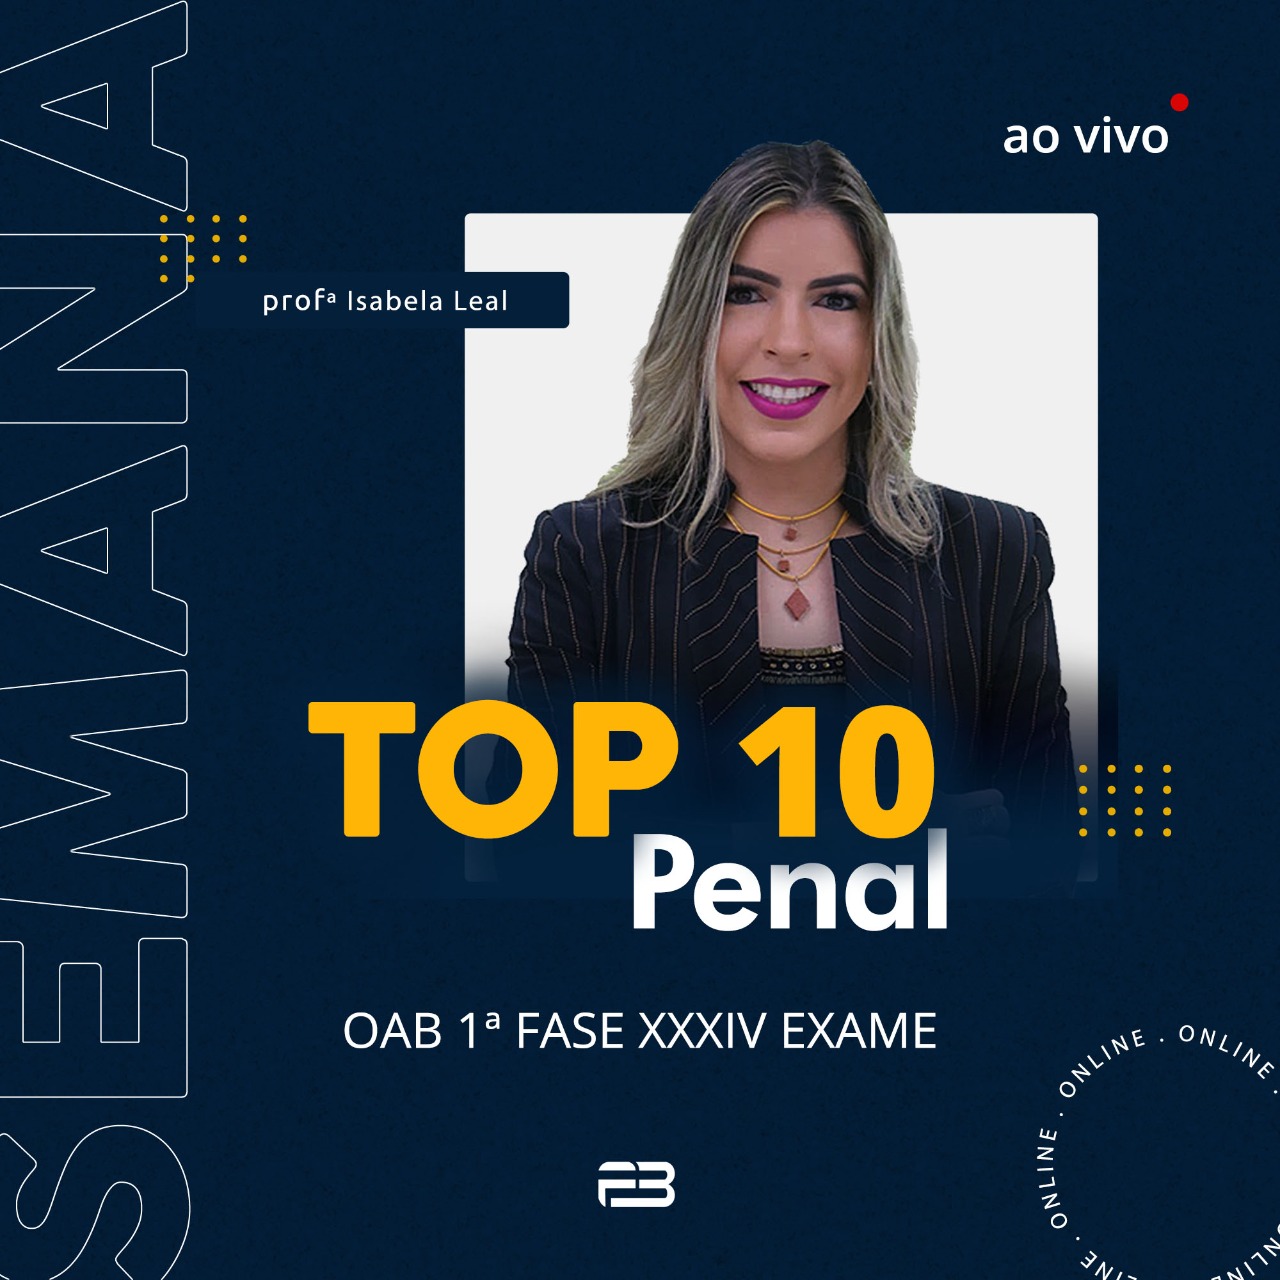 TOP 10 PENAL - OAB 1º FASE XXXIV EXAME